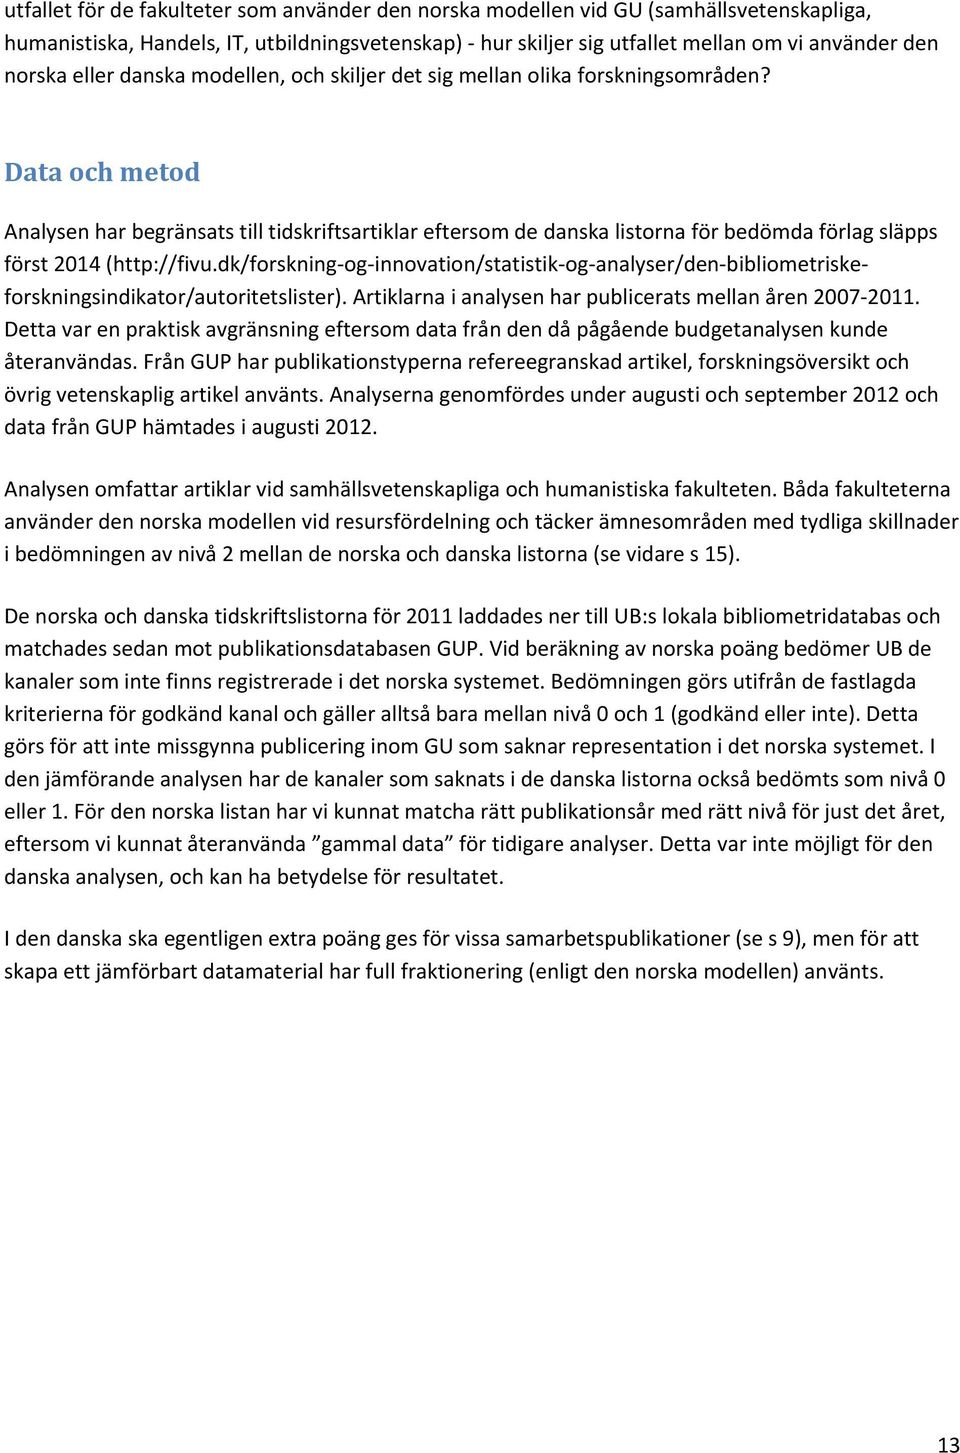 Data och metod Analysen har begränsats till tidskriftsartiklar eftersom de danska listorna för bedömda förlag släpps först 2014 (http://fivu.